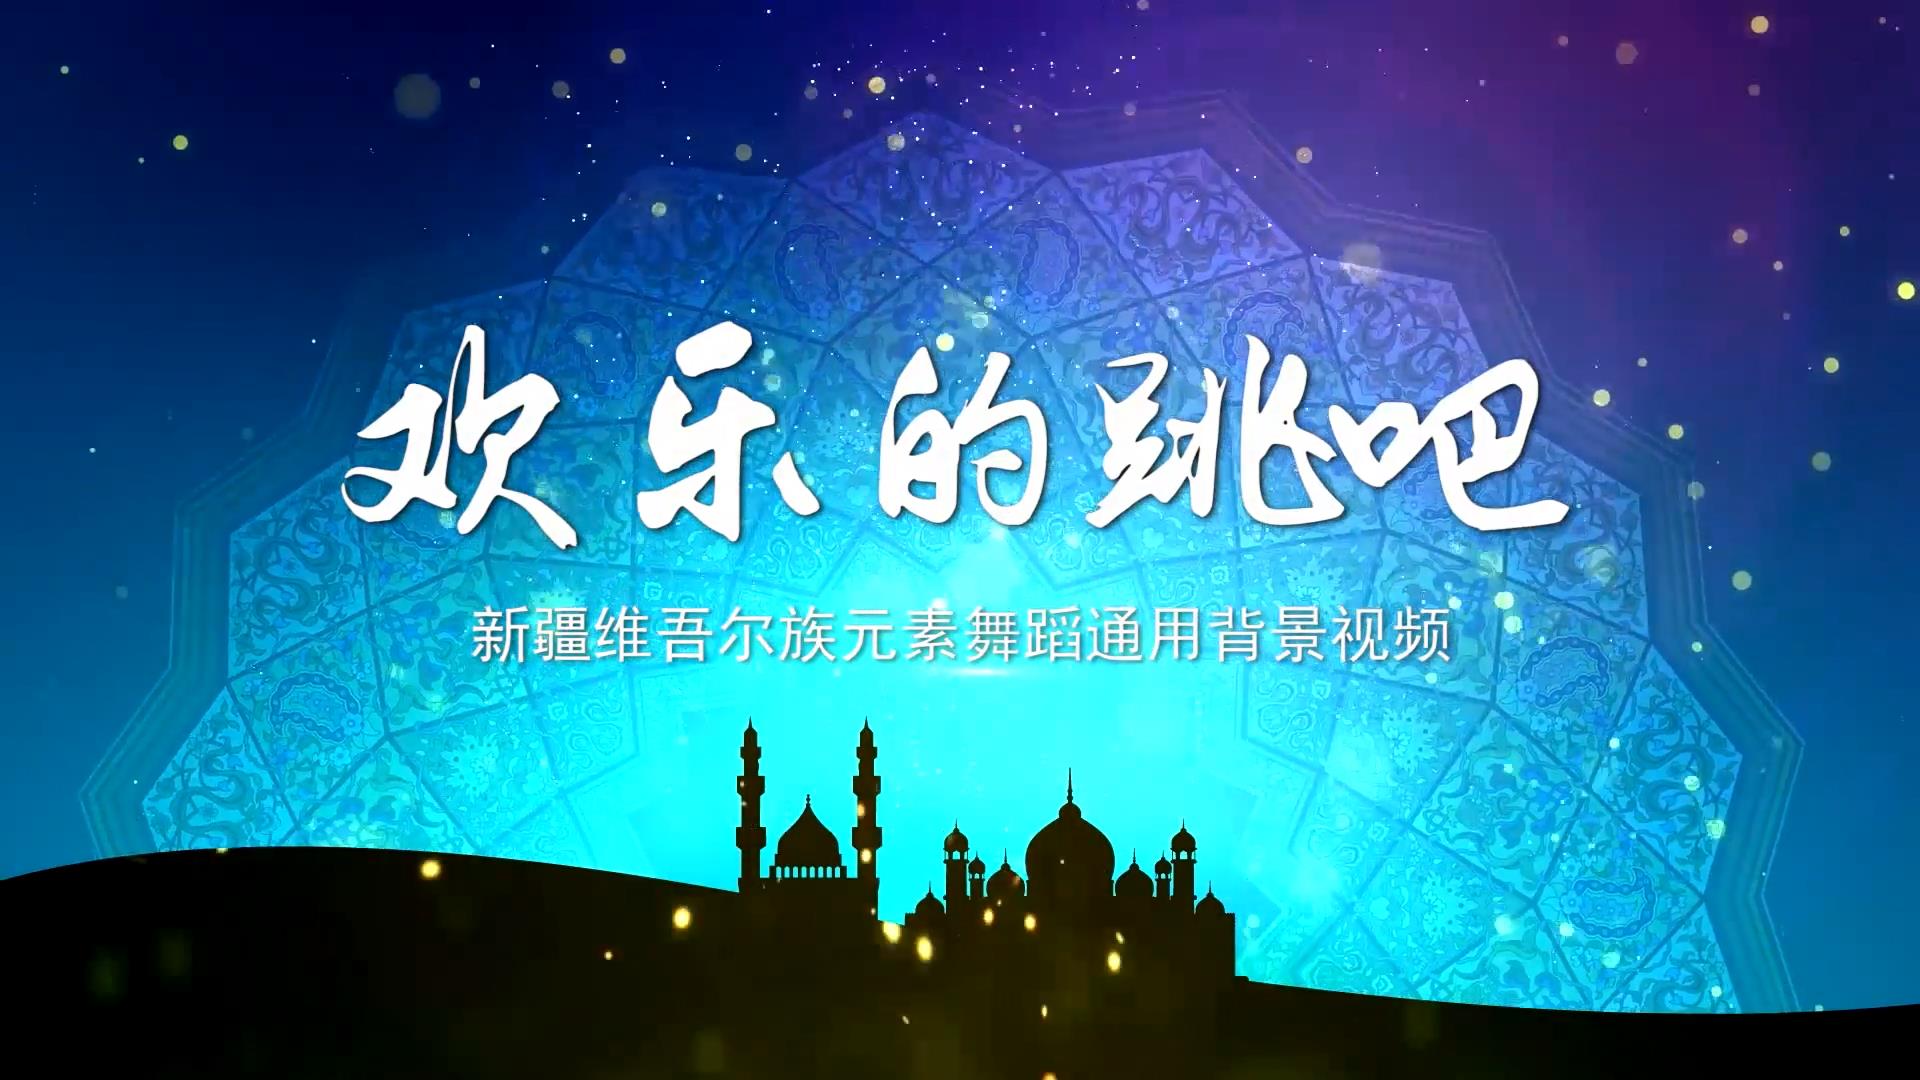 欢乐的跳吧 新疆维吾尔族元素 歌舞晚会舞蹈节目LED背景通用大屏幕视频素材TV